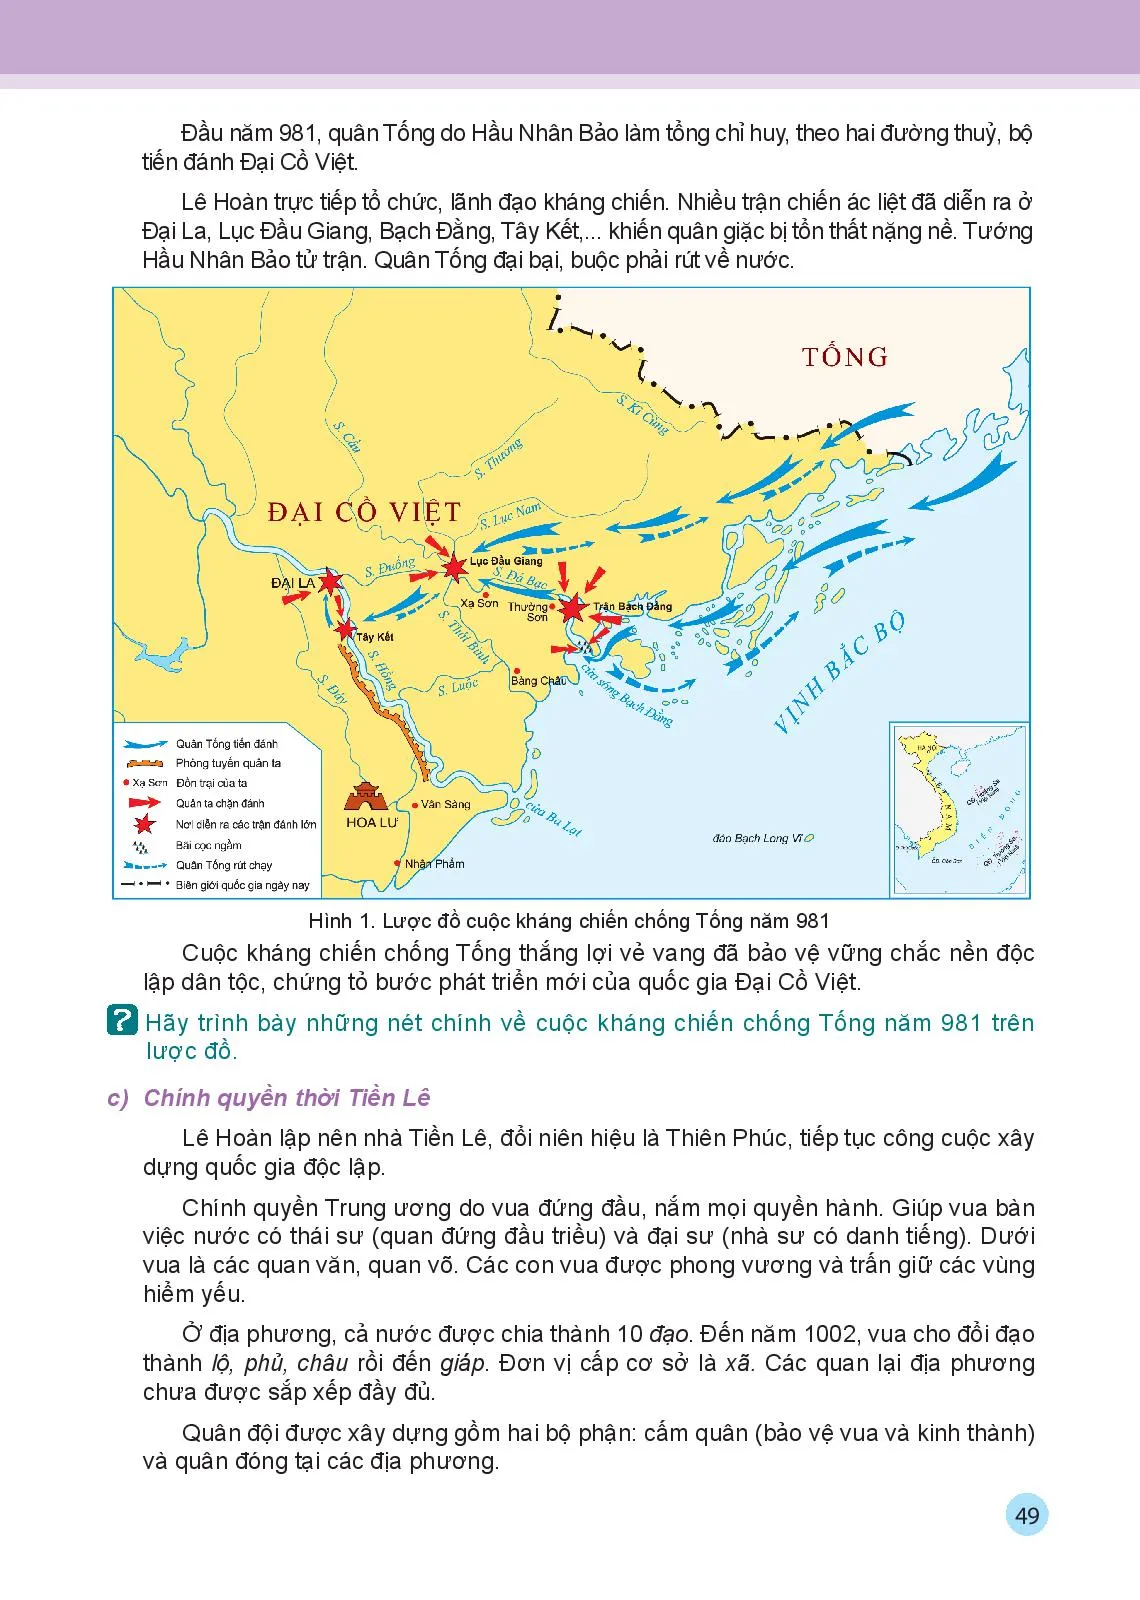 Bài 10 Đại Cổ Việt thời Đinh và Tiền Lê (968 – 1009)